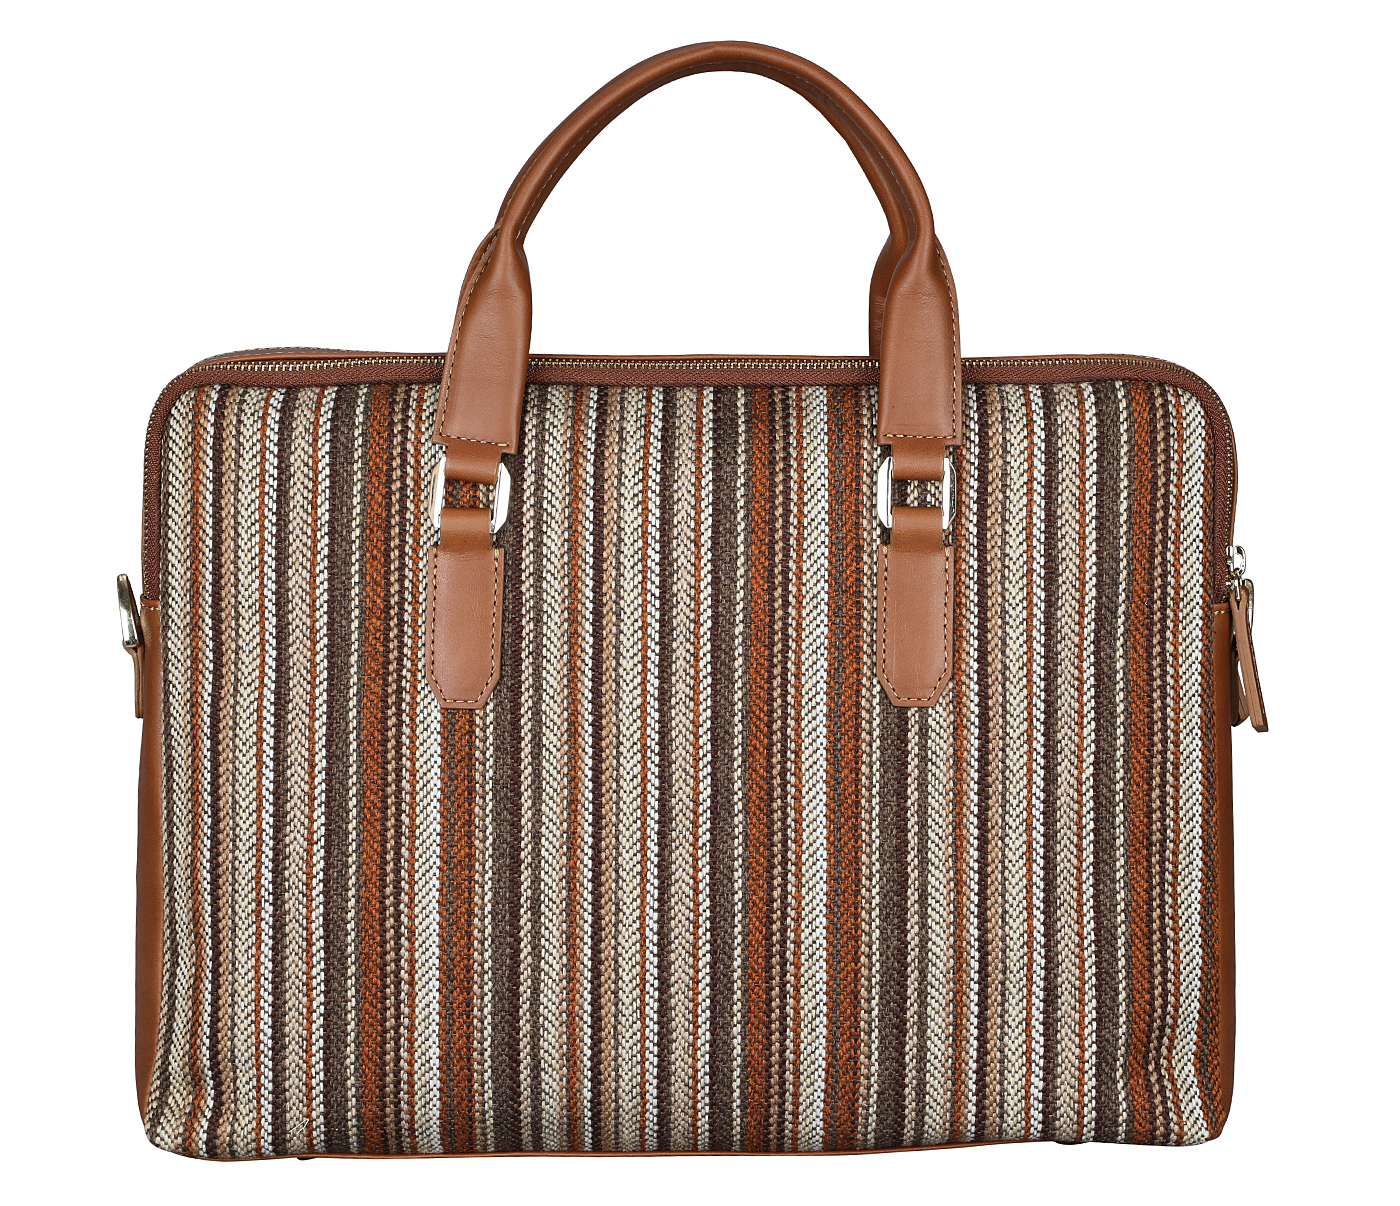 Portfolio / Laptop Bag-Alvaro-Laptop cum portfolio bag in Multi colored Stripes print fabric with Genuine Leather combination - Tan